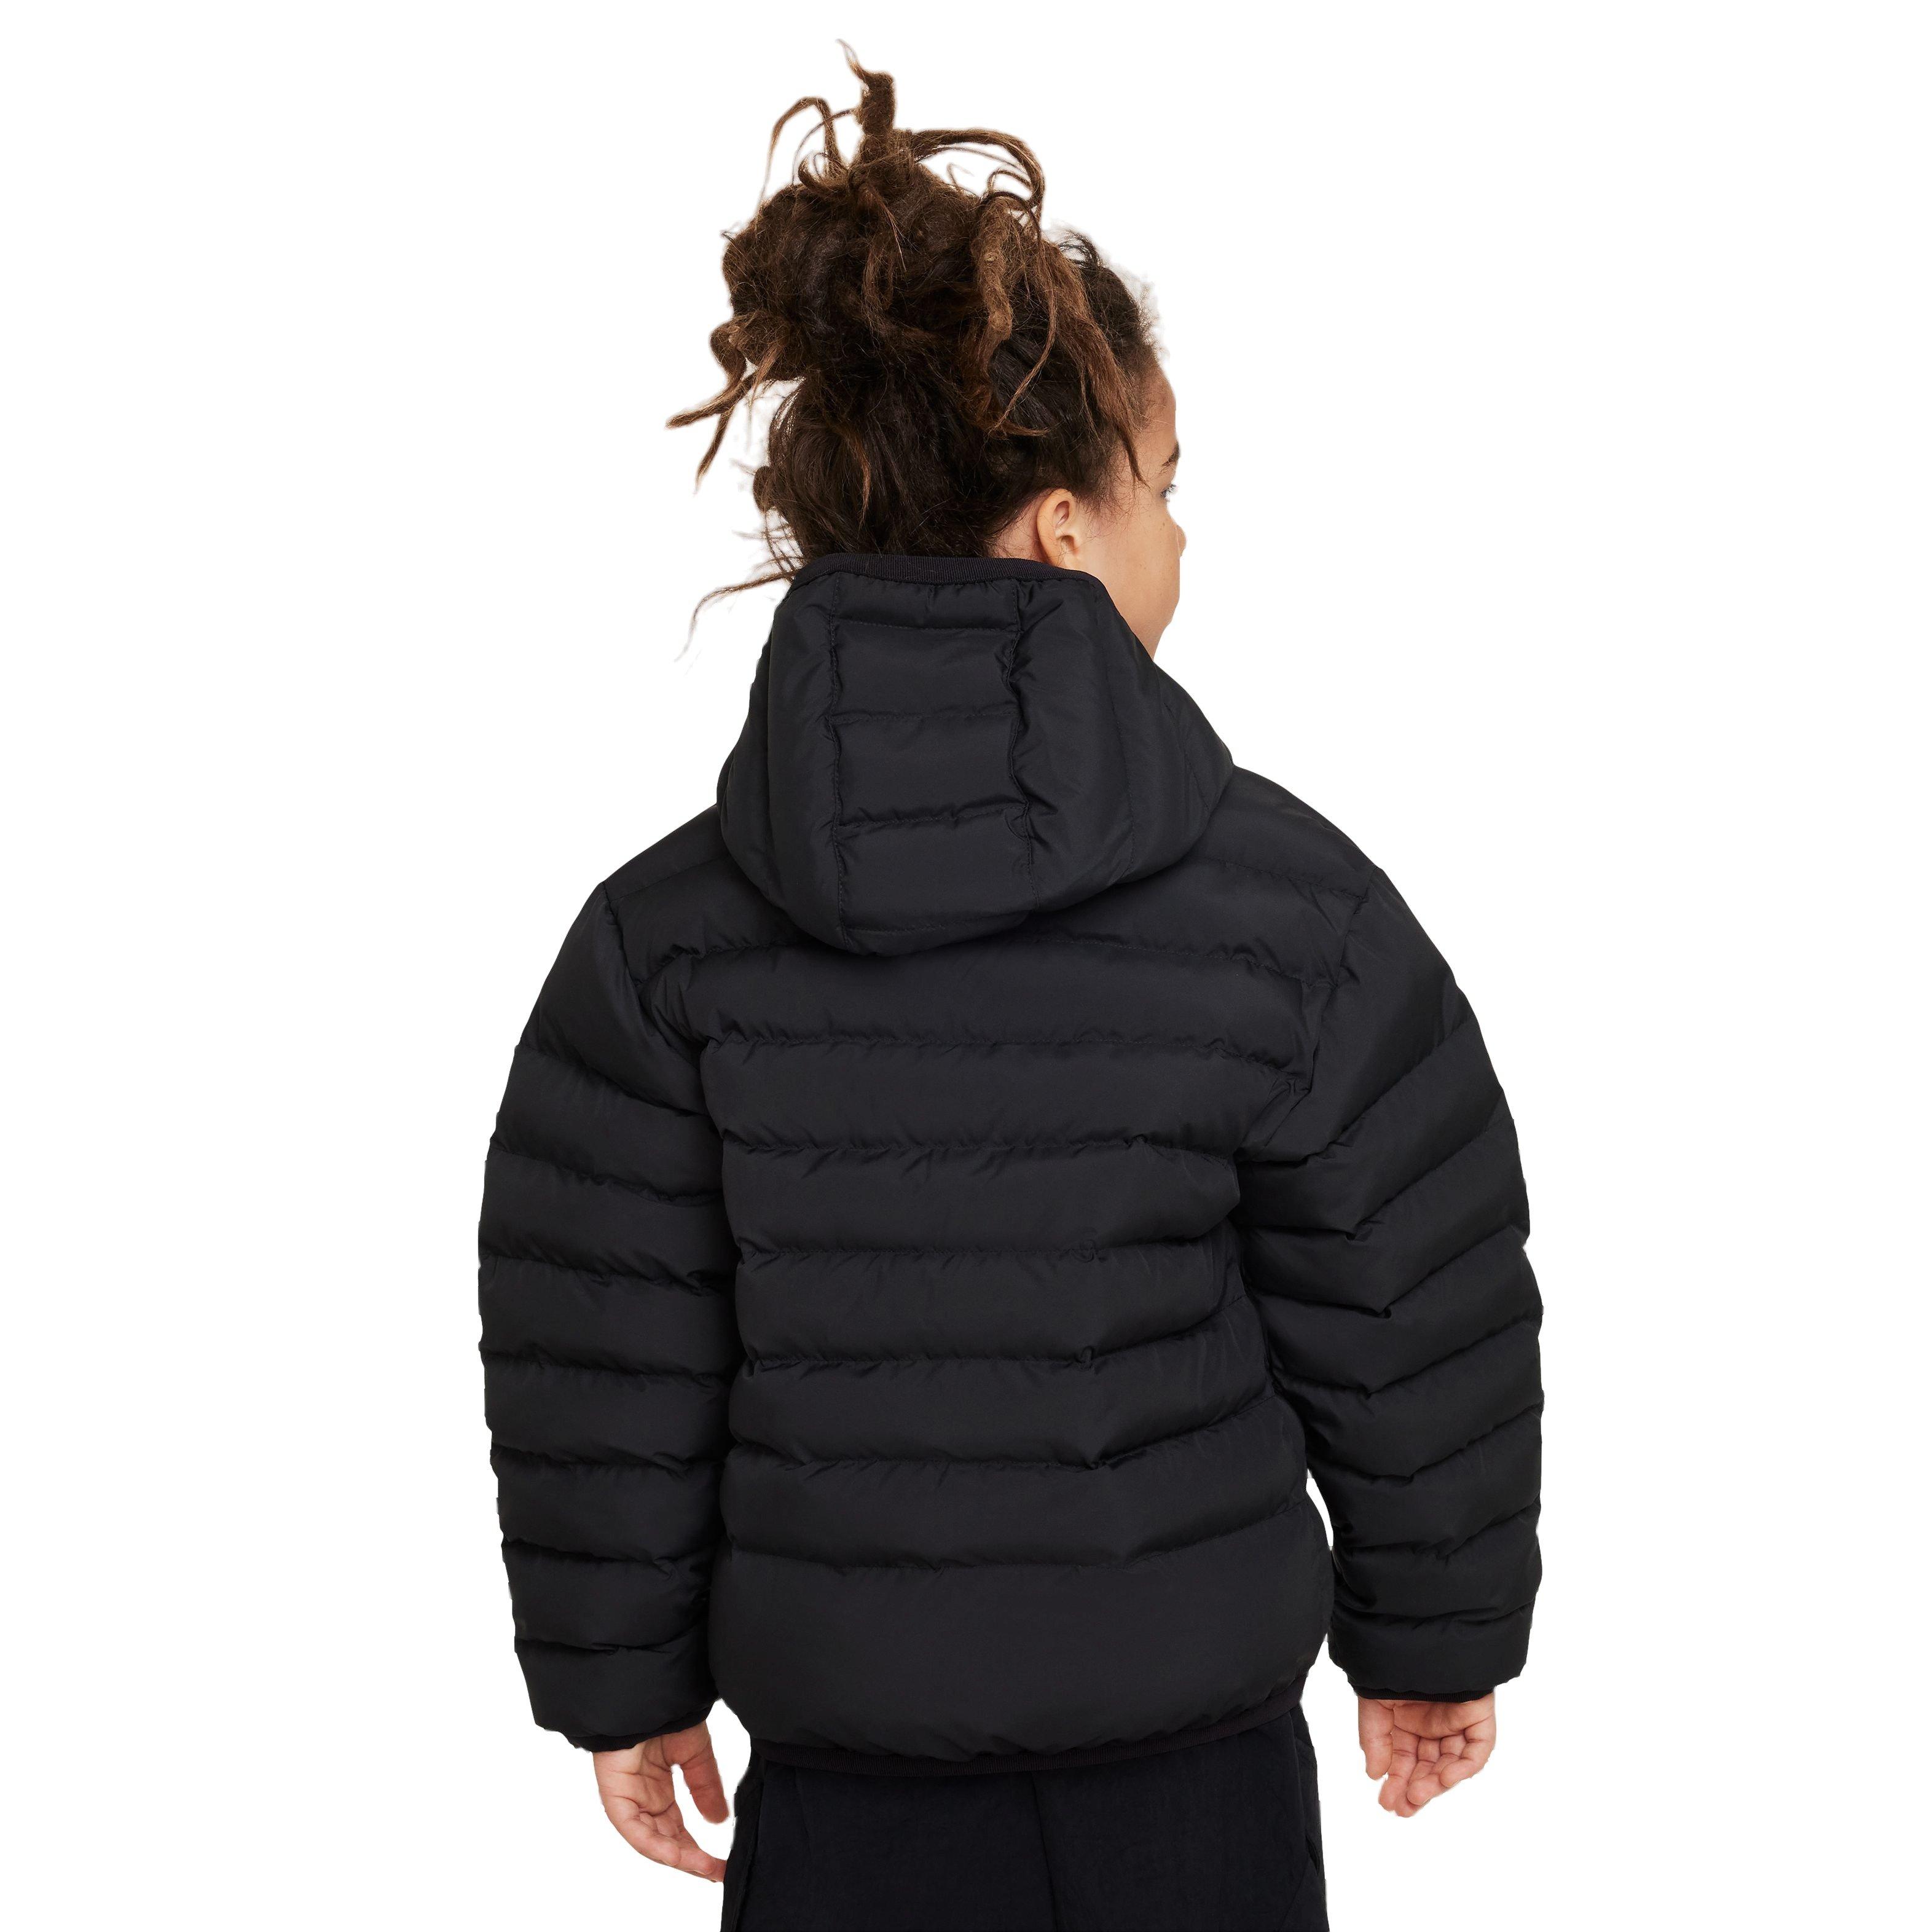 Nike Big Boys' Sportswear Synthetic Fill Hooded Jacket - Black